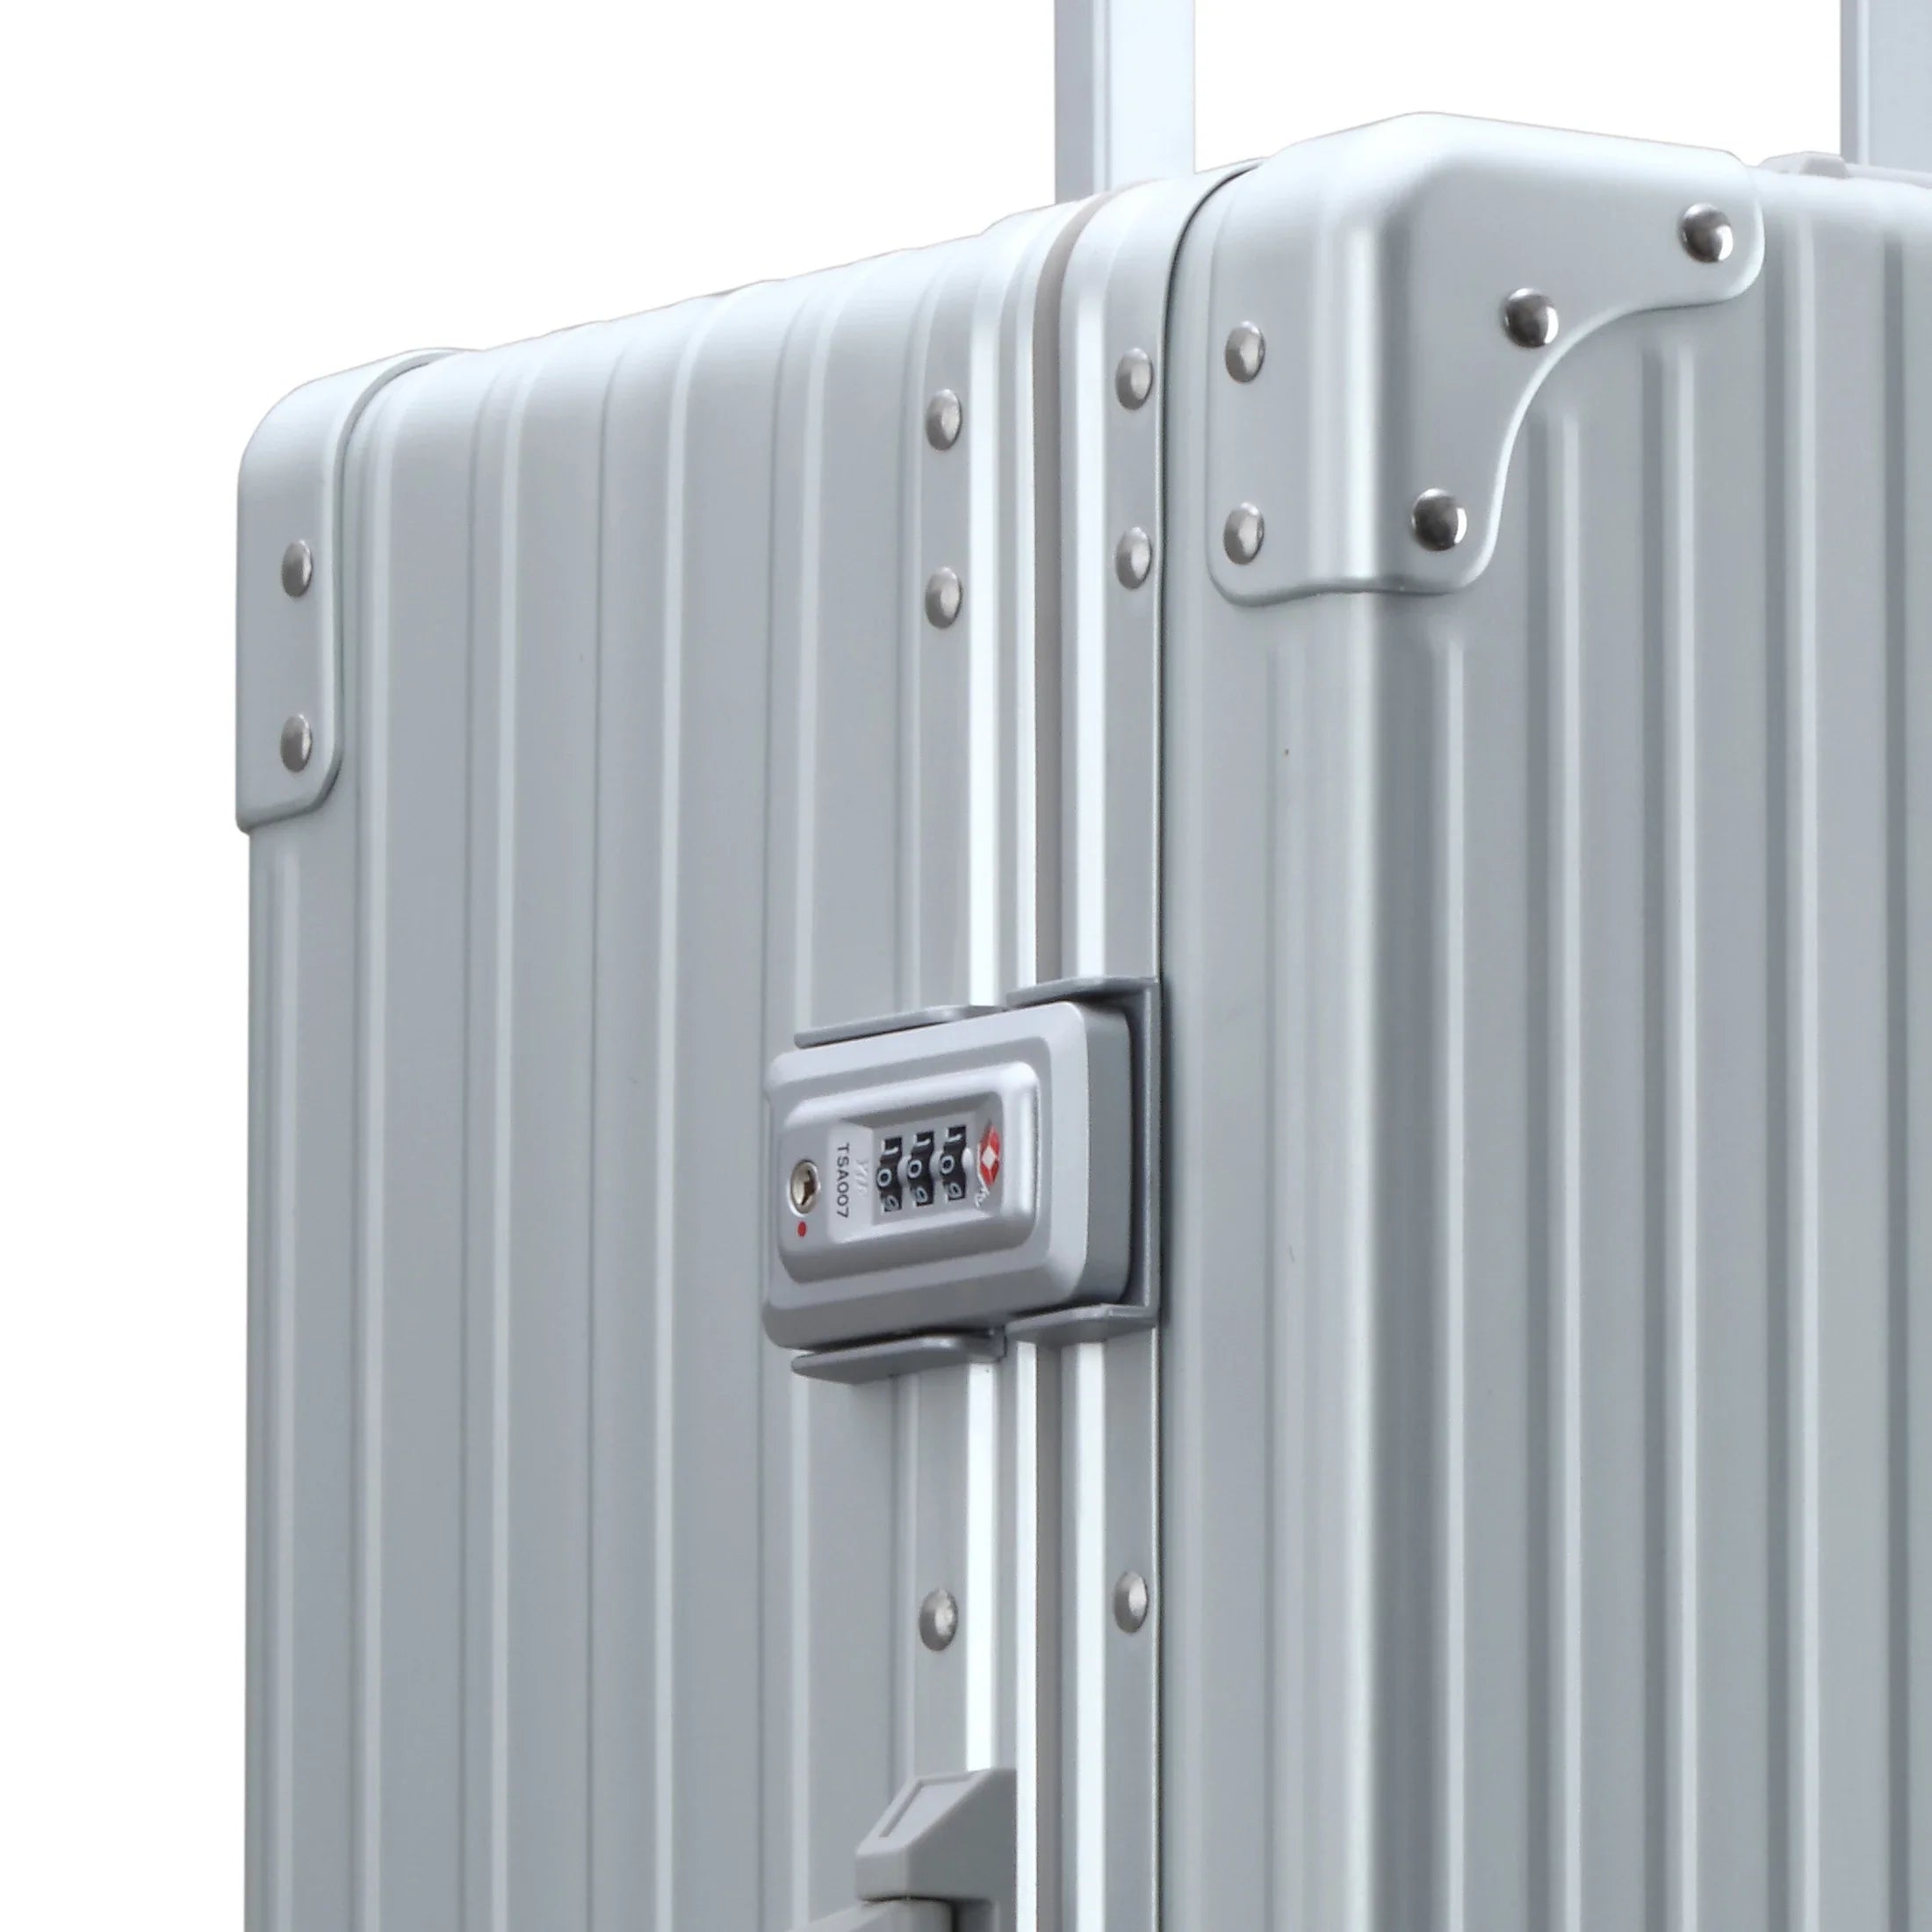 Aleon Traveler 4-wheel suitcase with garment bag 67 cm - Platinum